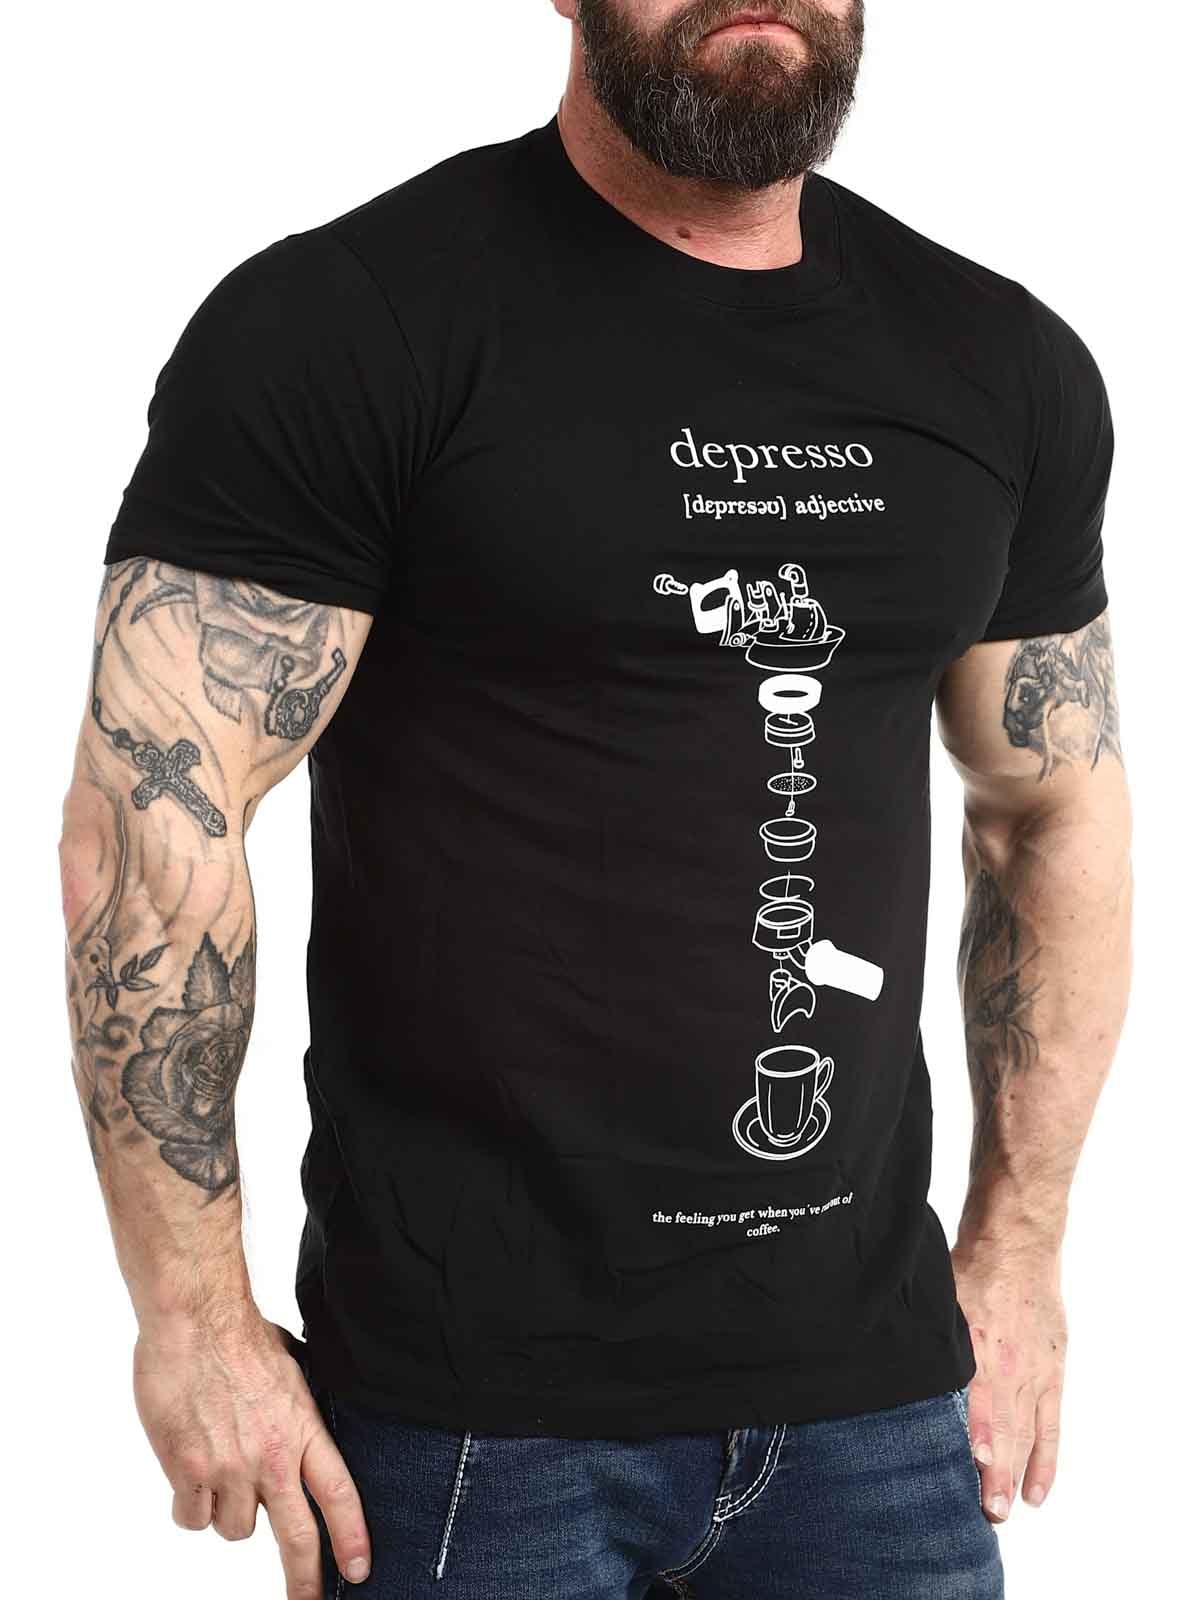 Depresso-Tshirt_2.jpg